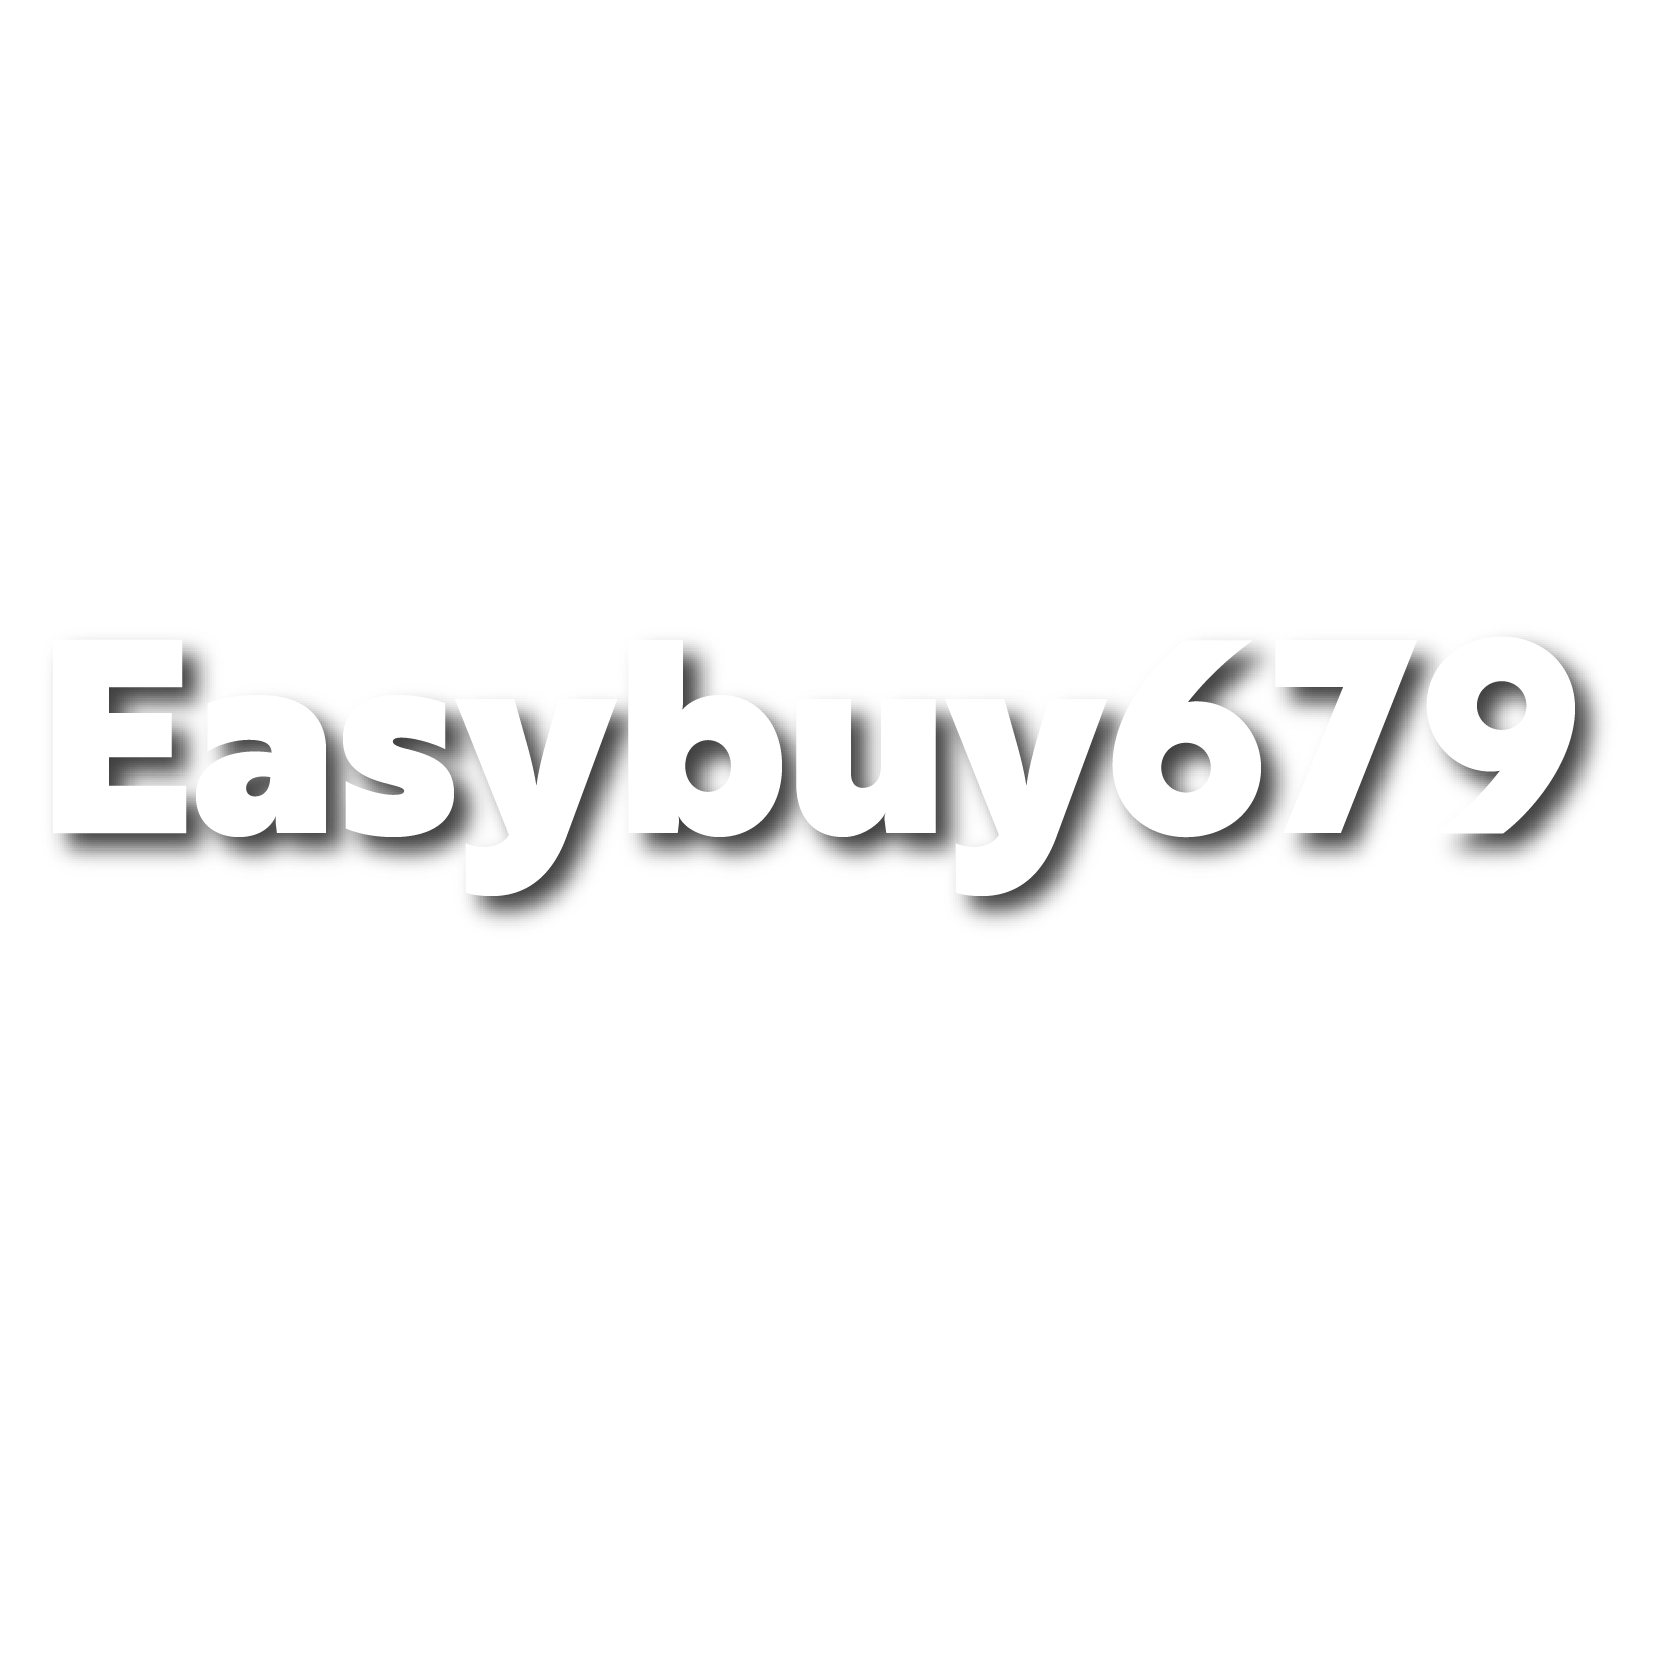 easybuy679.com